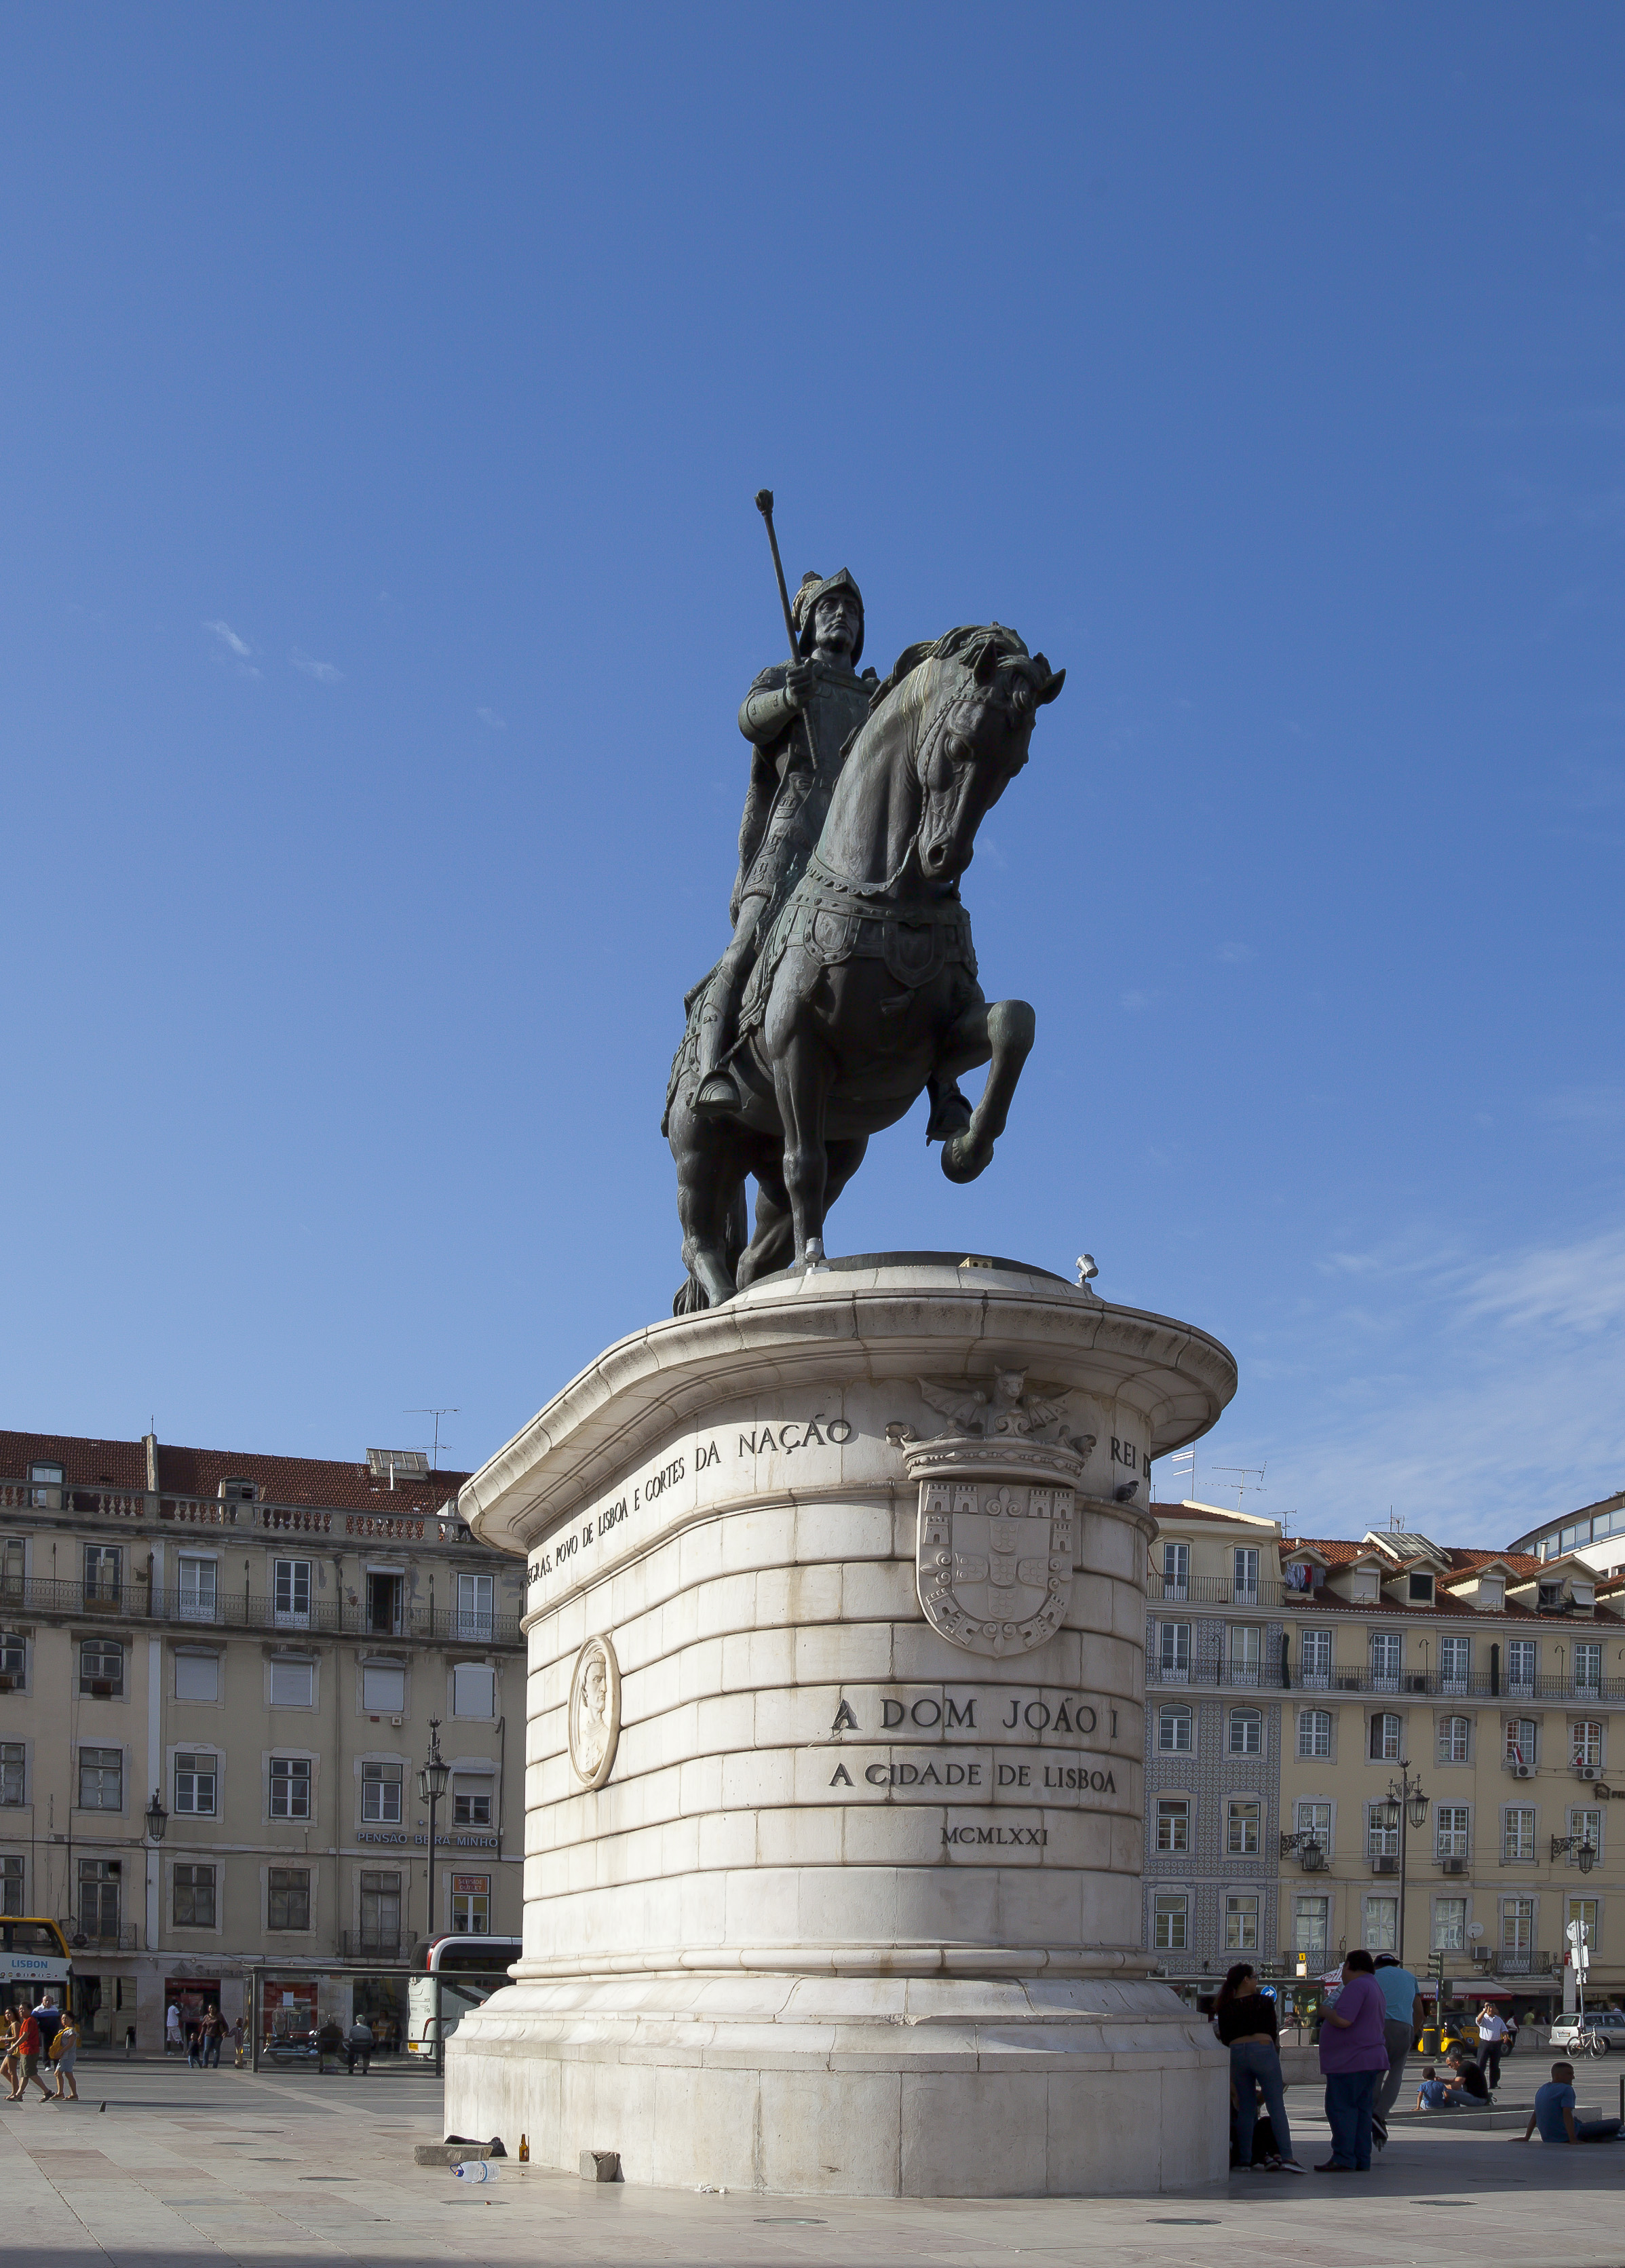 Estatua de Don Juan I, Plaza de Figueira, Lisboa, Portugal, 2012-05-12, DD 01